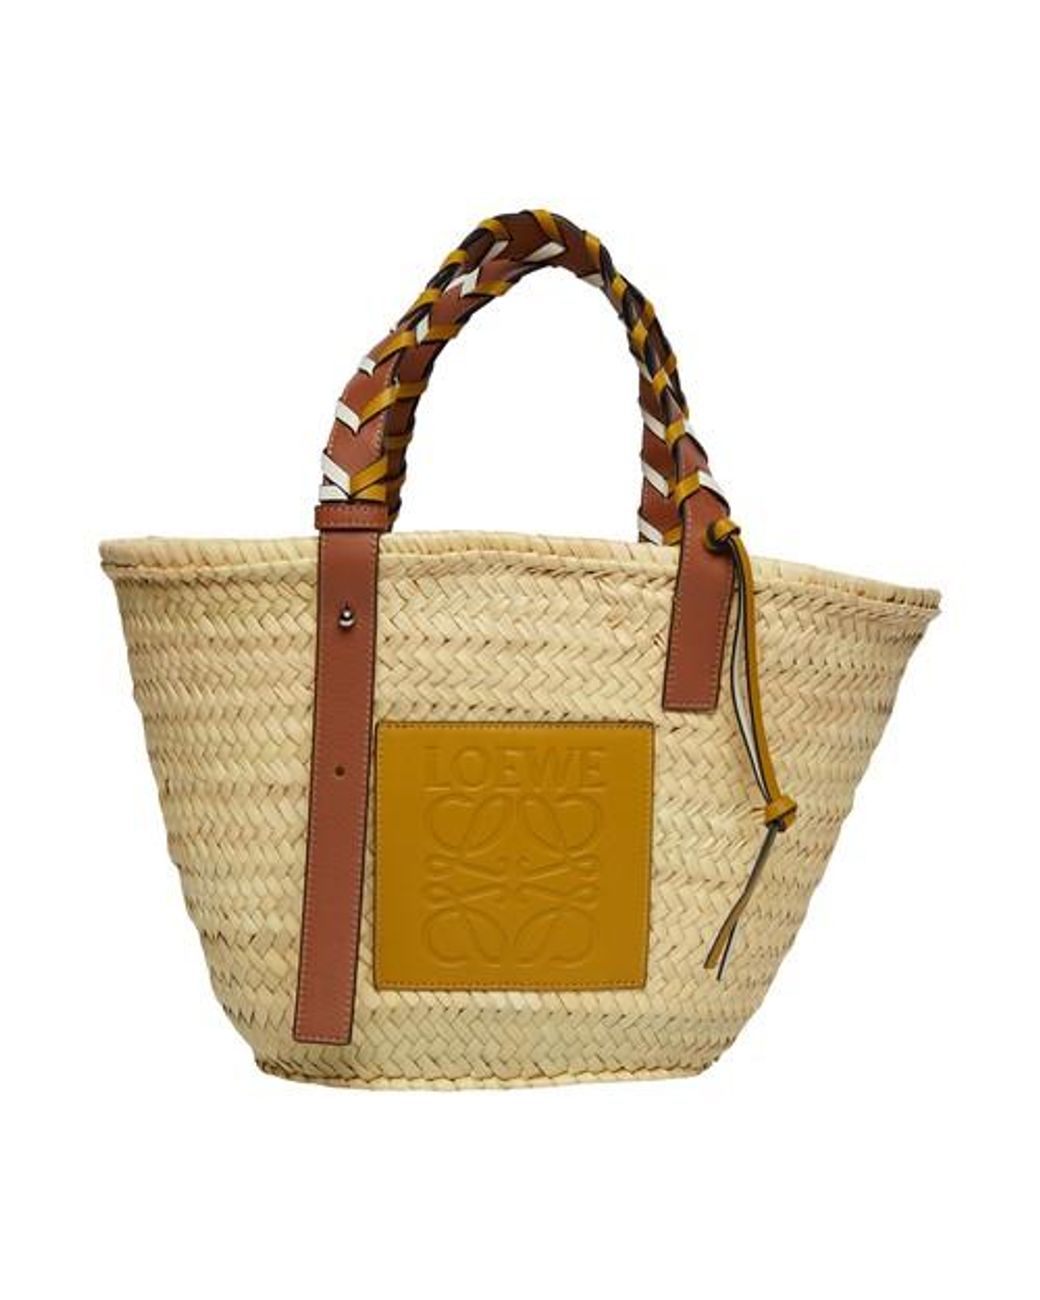 Loewe Basket Bag With Braided Handle in Metallic | Lyst Australia